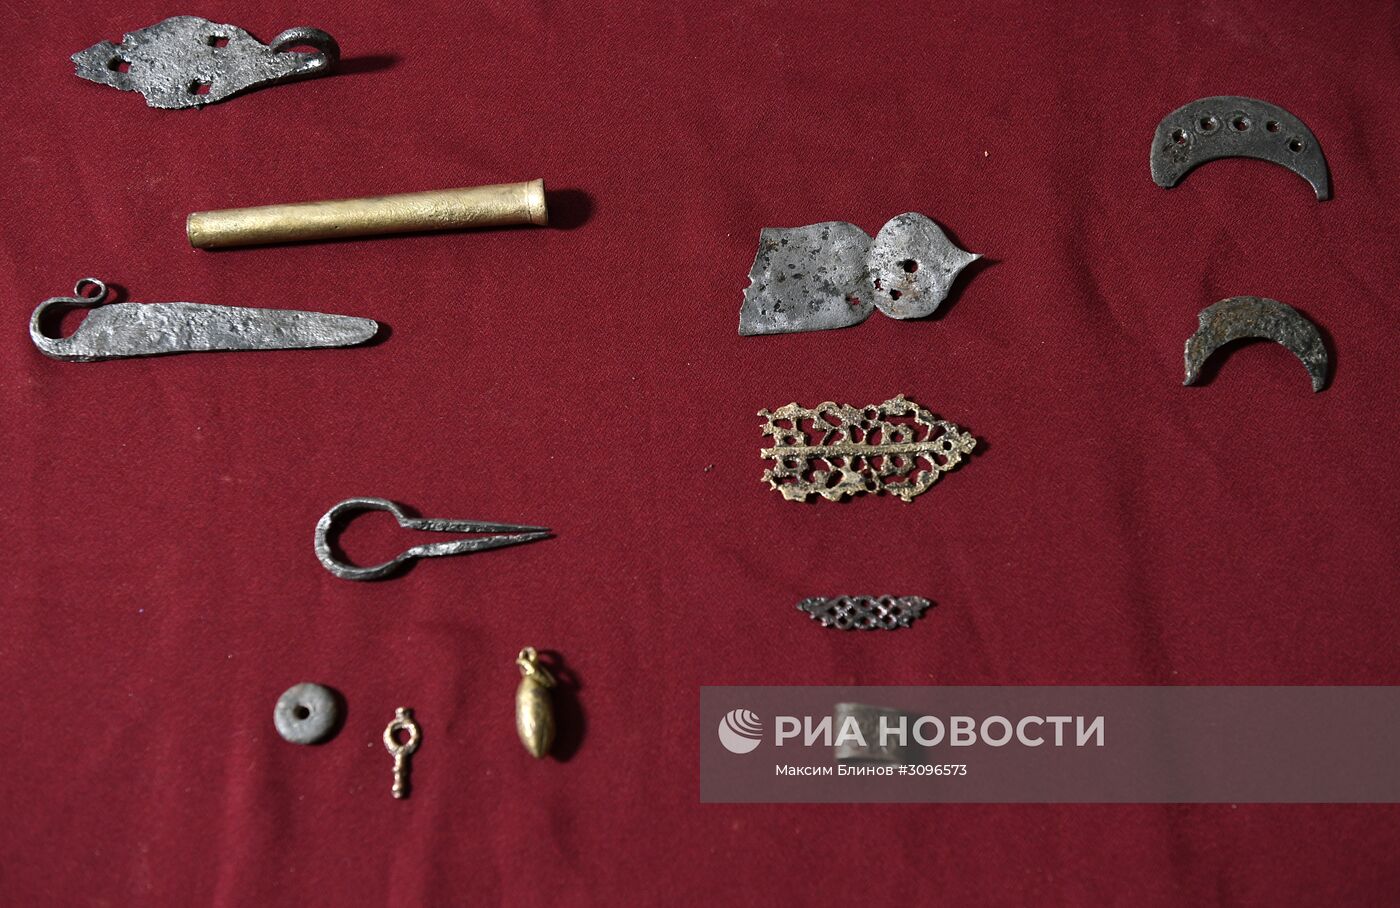 Показ археологических находок, найденных в рамках благоустройства Москвы